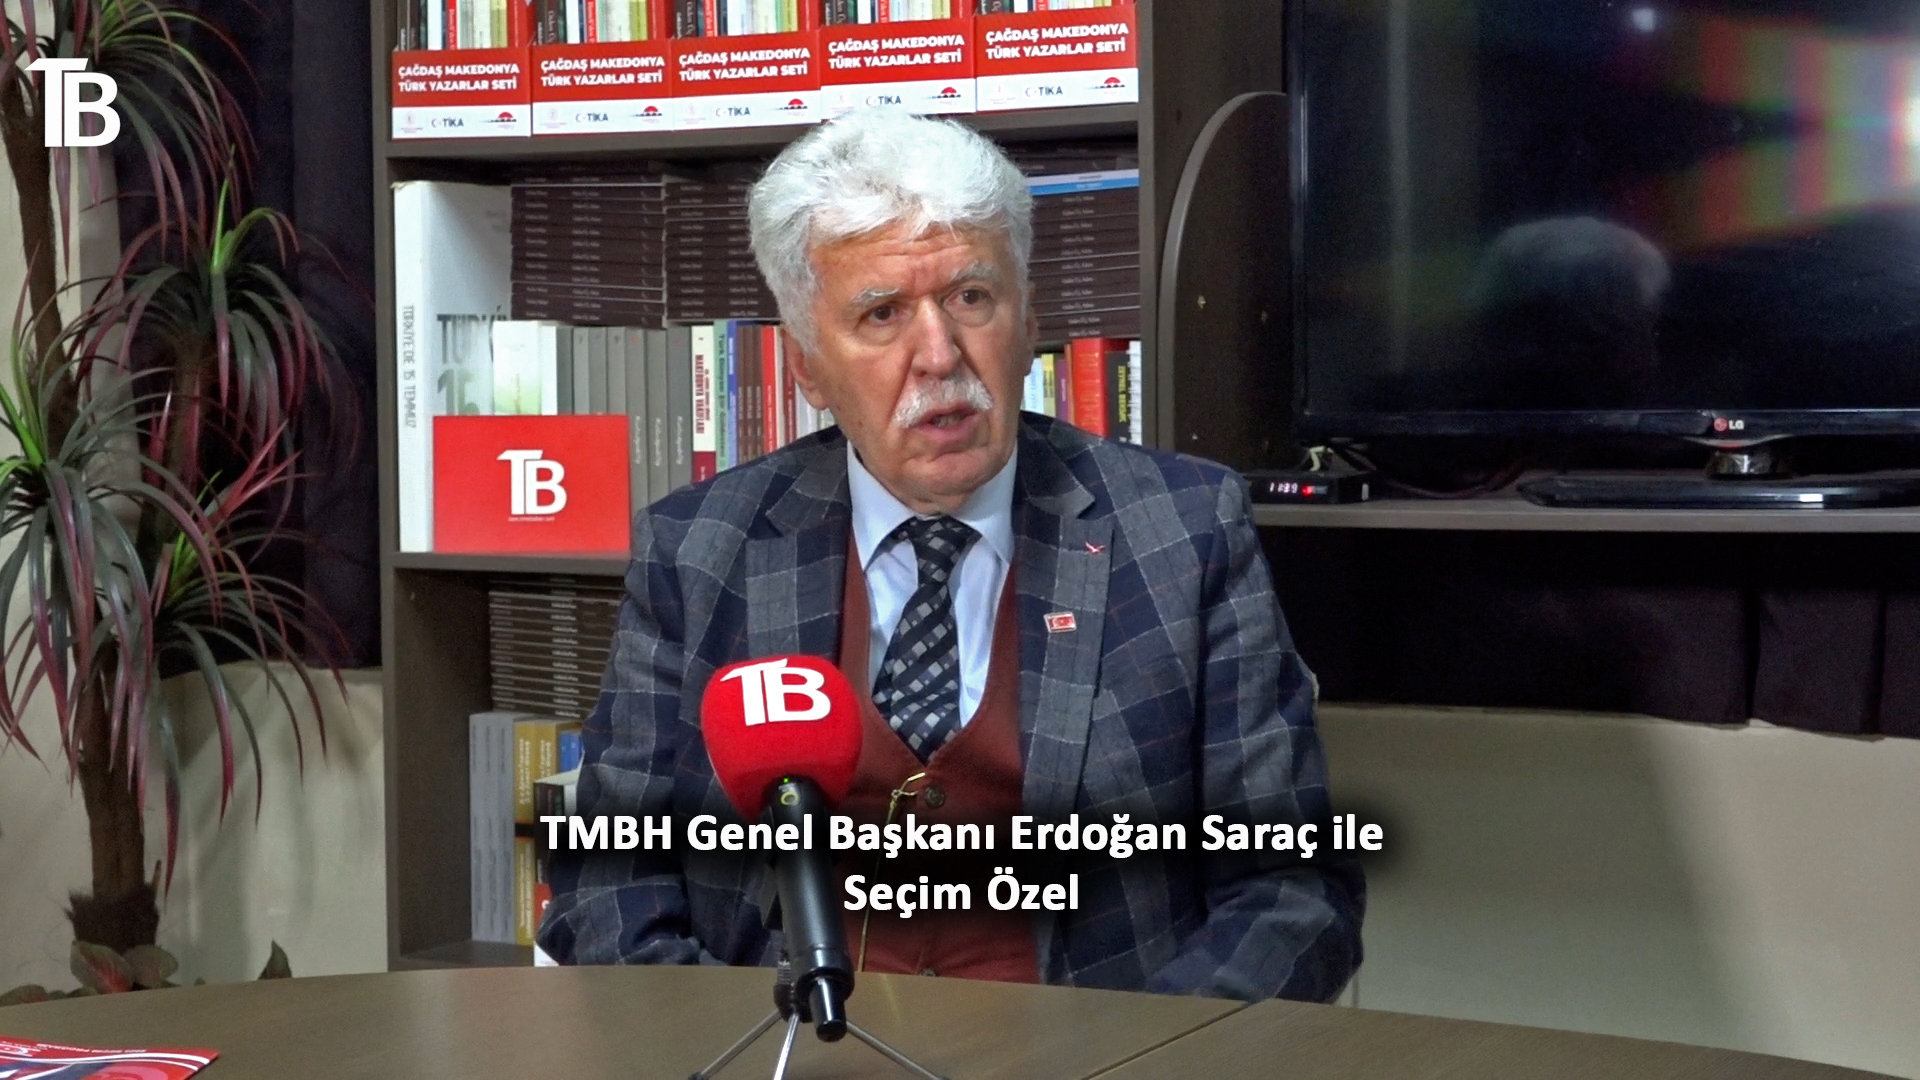 TMBH Genel Başkanı Erdoğan Saraç: Hangi taassuptan olursa olsun hepimiz kırmızı çizgiler üzerinde birleşmeliyiz